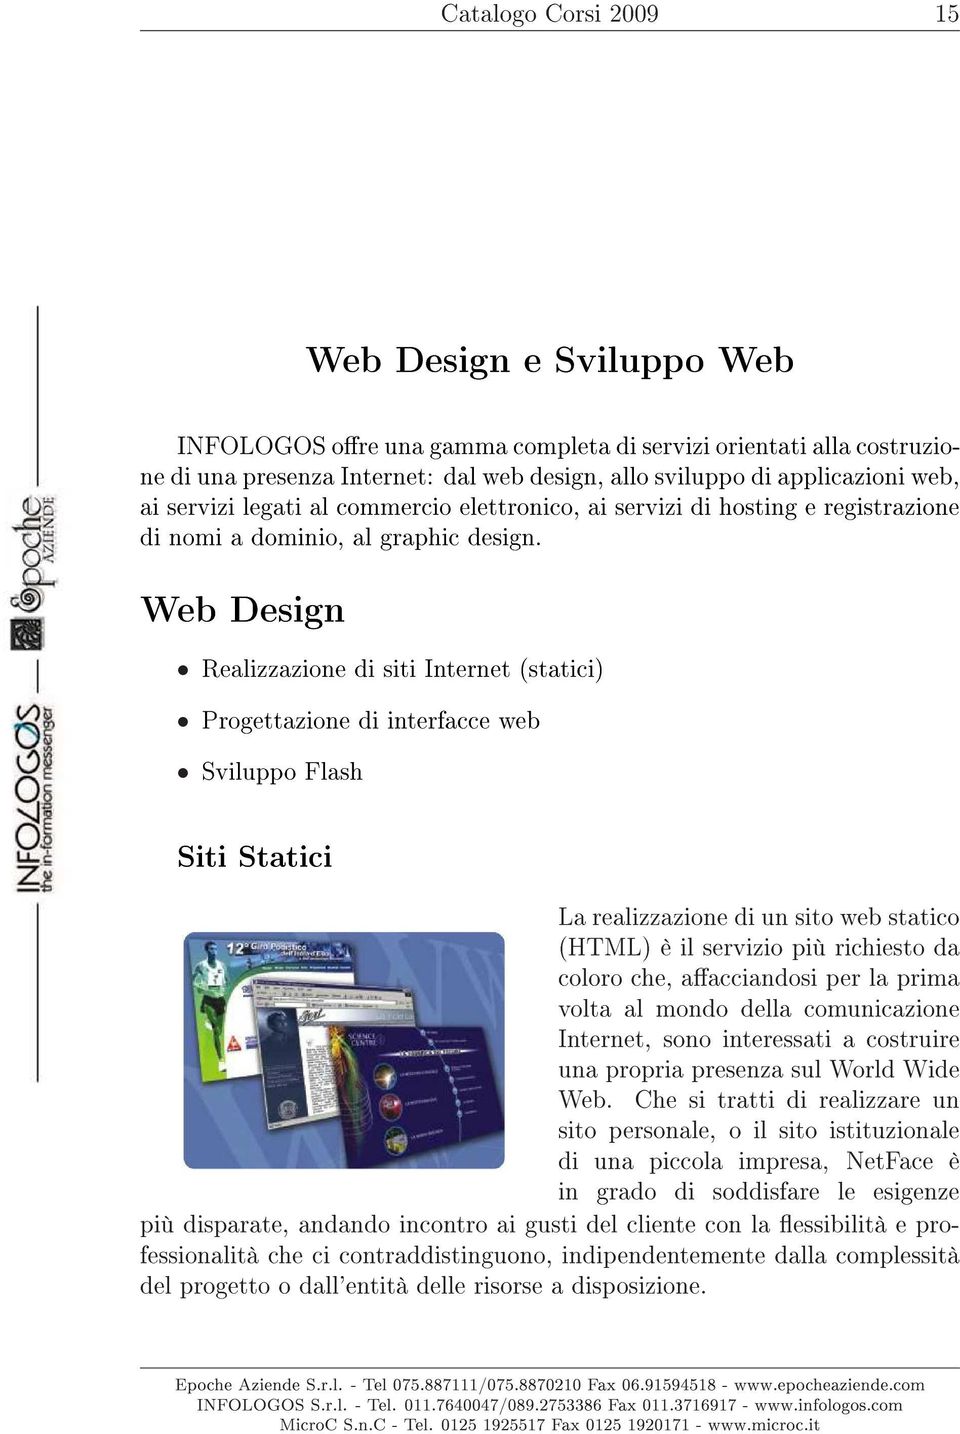 Web Design Realizzazione di siti Internet (statici) Progettazione di interfacce web Sviluppo Flash Siti Statici La realizzazione di un sito web statico (HTML) è il servizio più richiesto da coloro